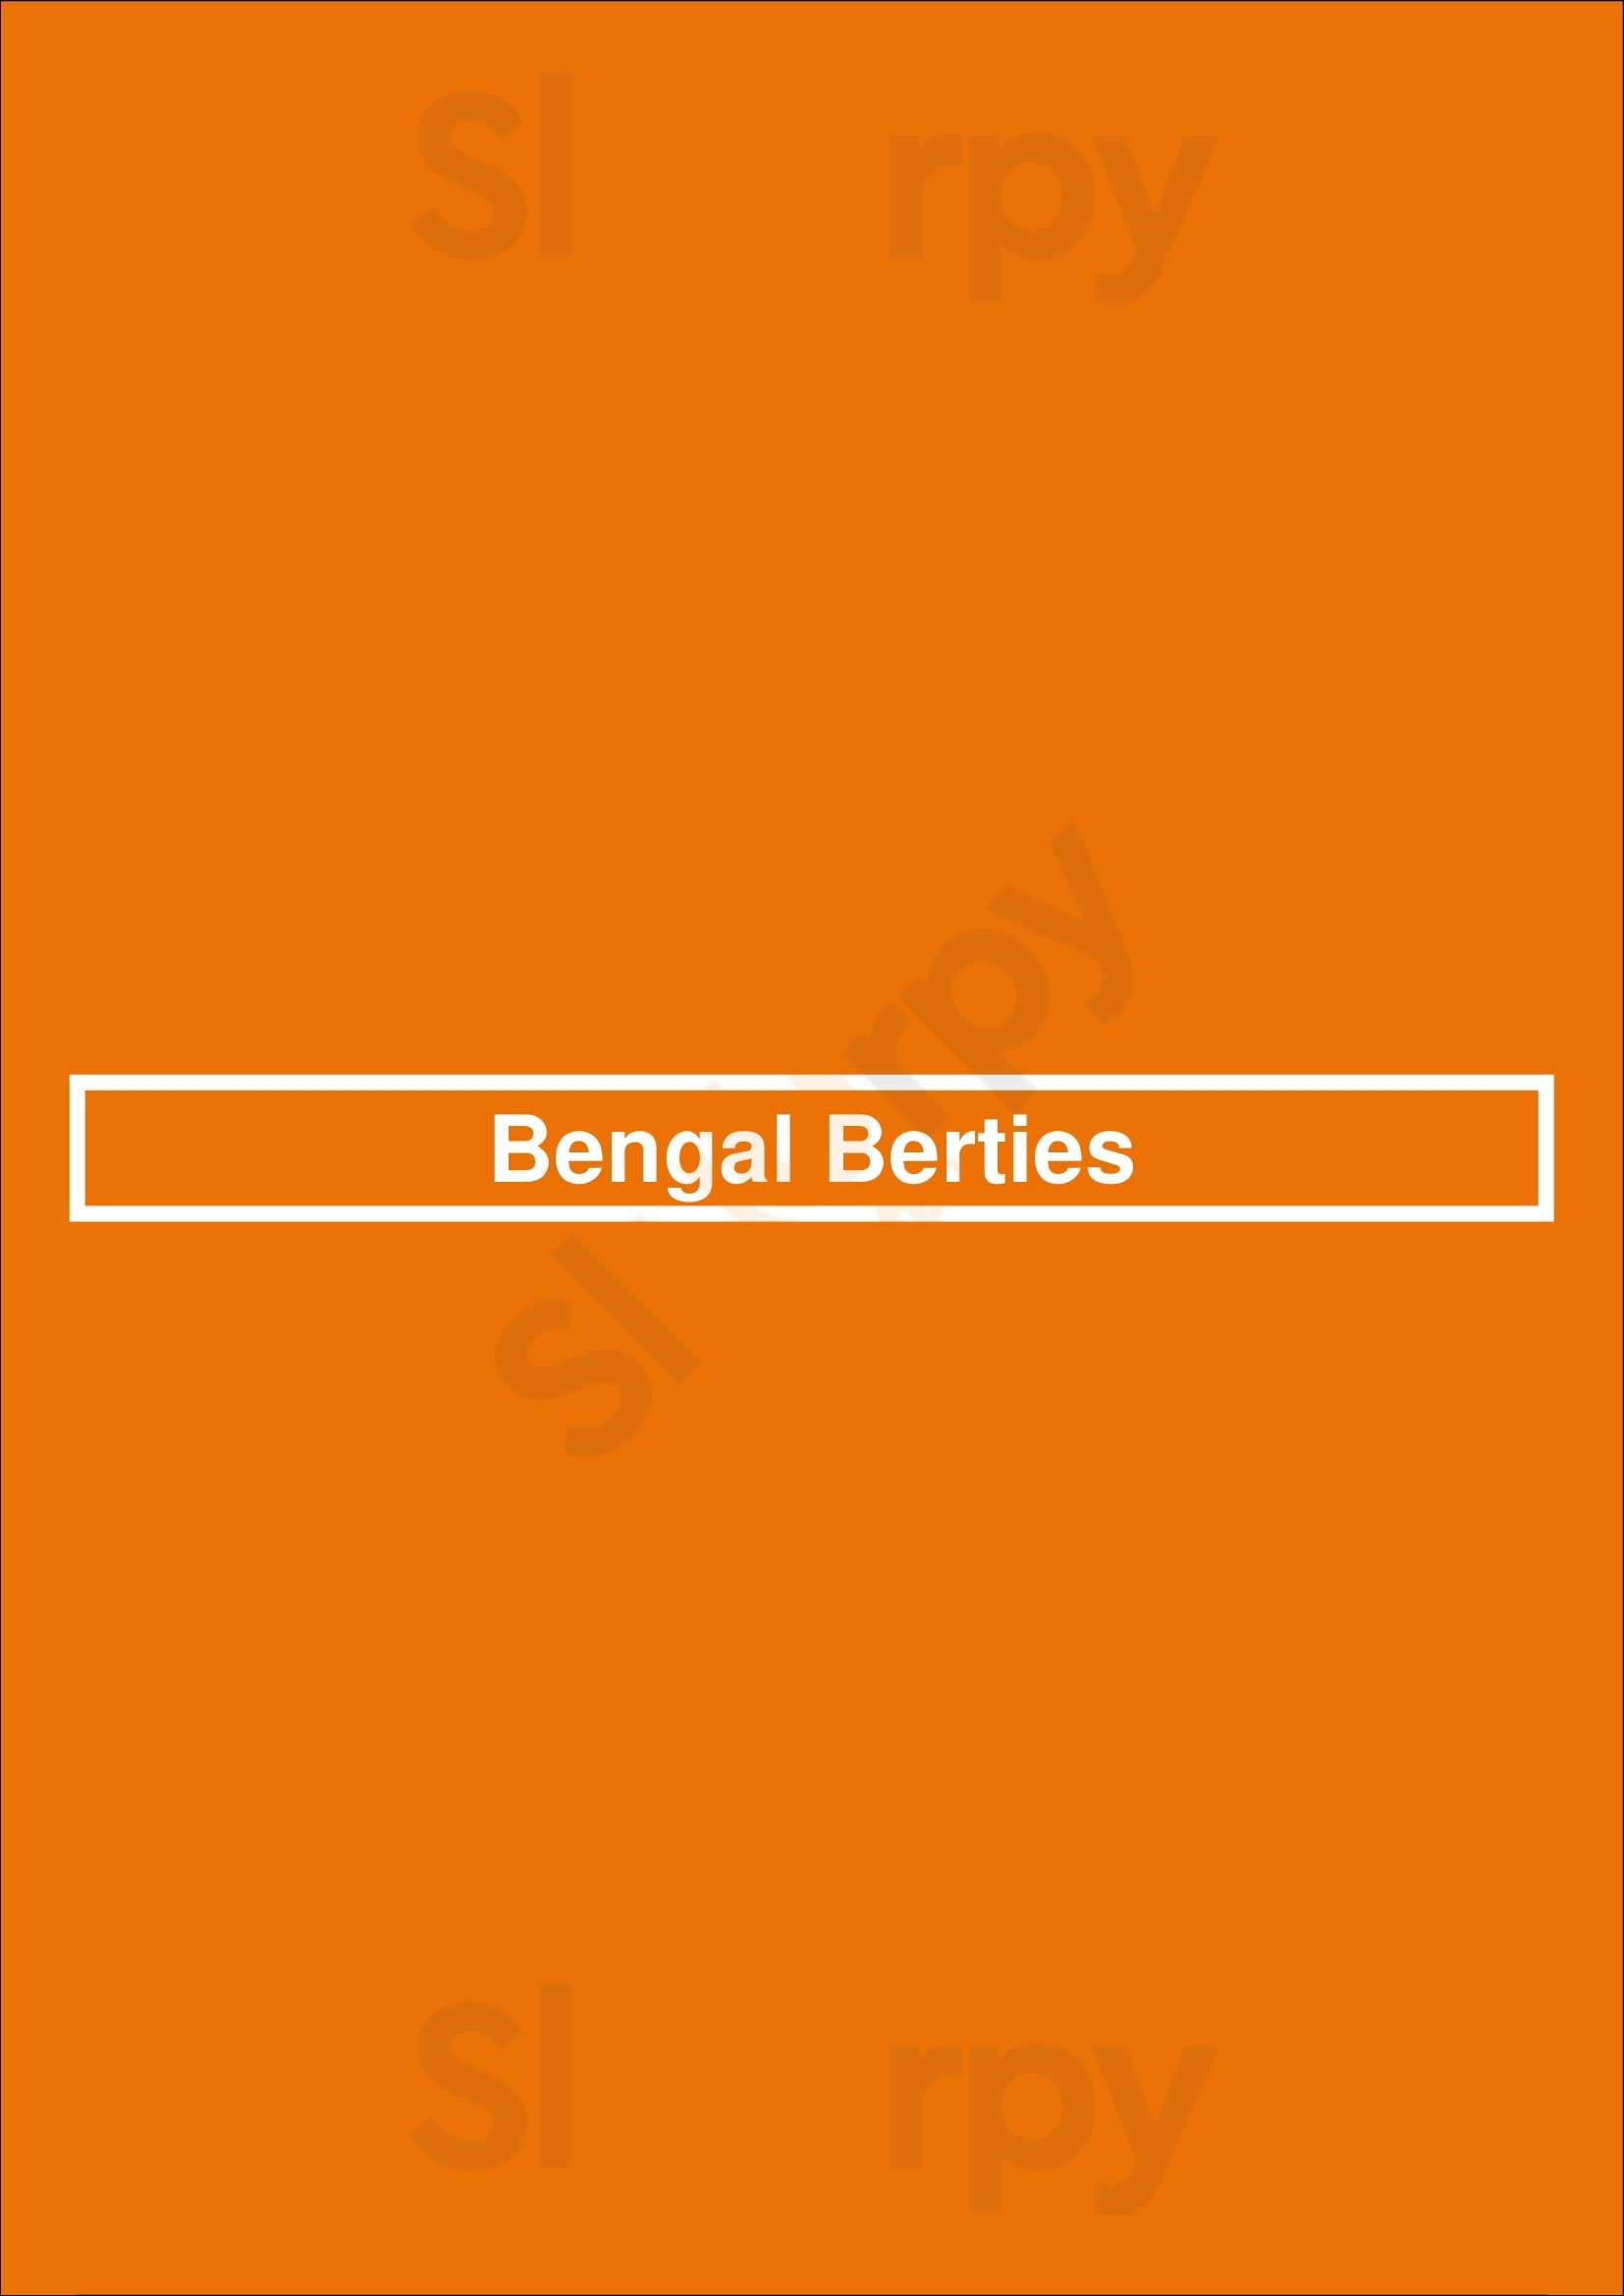 Bengal Berties London Menu - 1